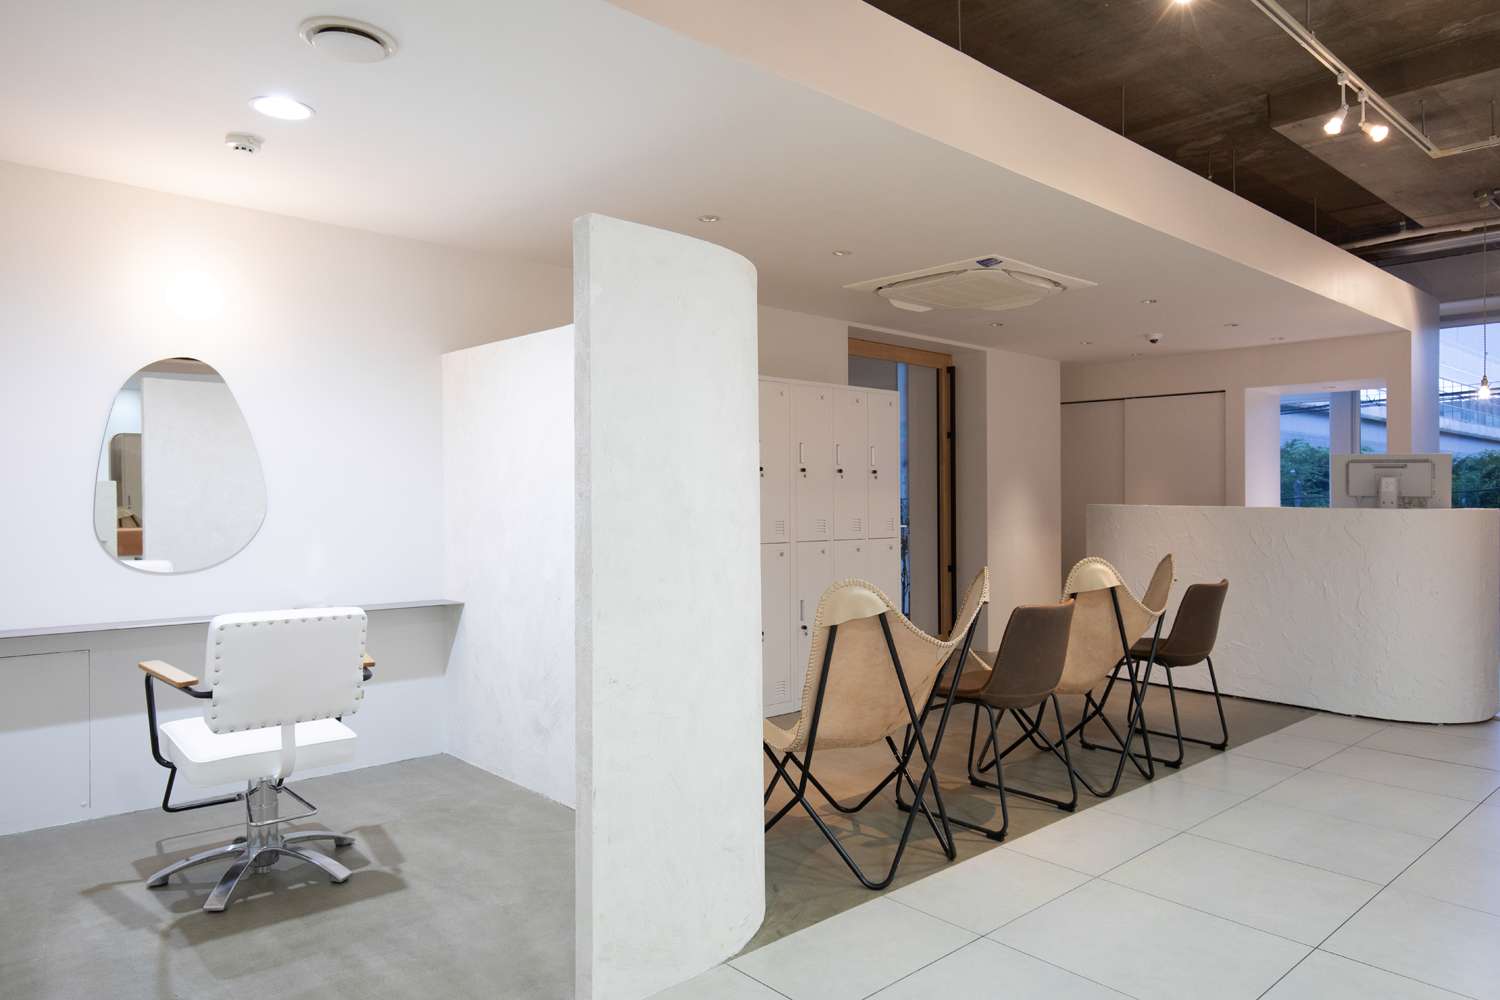 高槻市でおしゃれな空間デザインの内装設計はasazu design office_設計・監理させて頂いた美容室をホームページにUPしました。